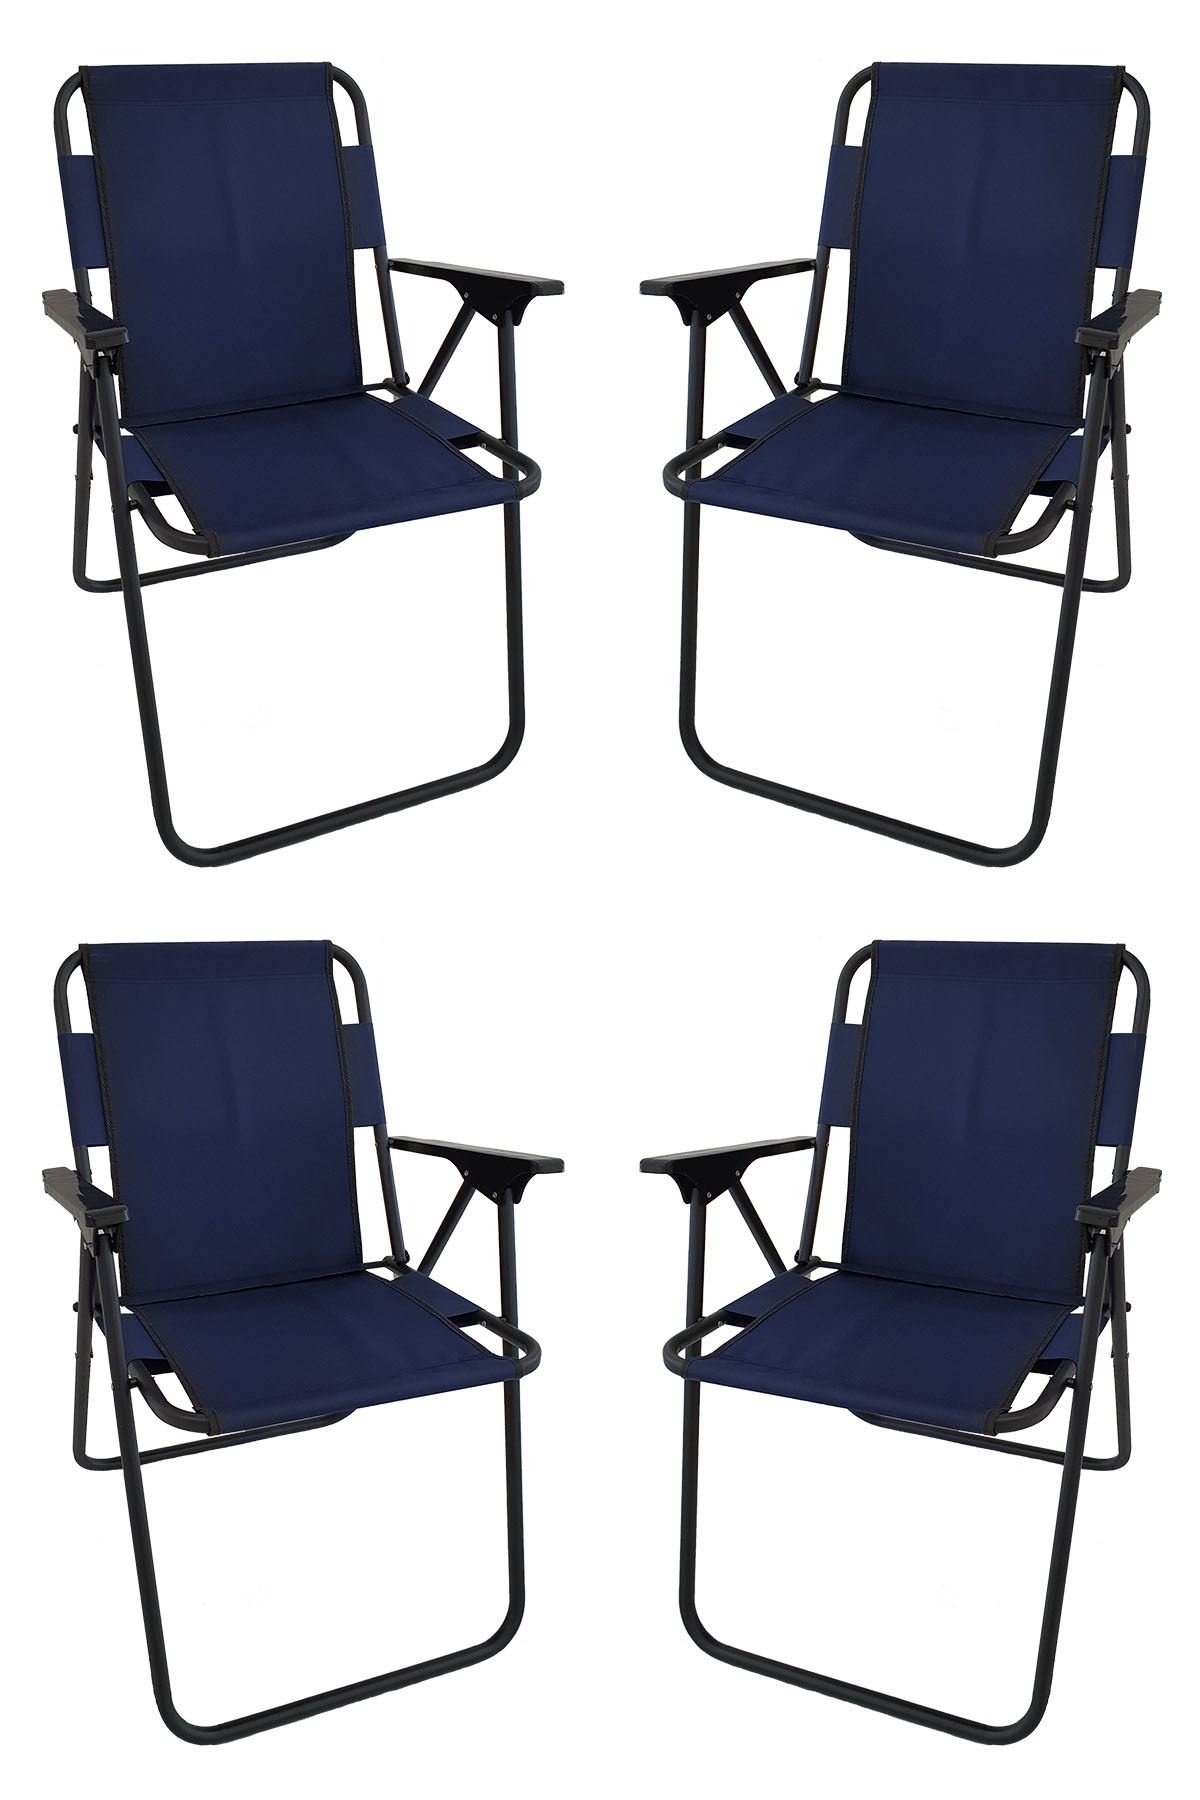 Bofigo 60X80 Granit Desenli Katlanır Masa + 4 Adet Katlanır Sandalye Kamp Seti Bahçe Takımı Lacivert